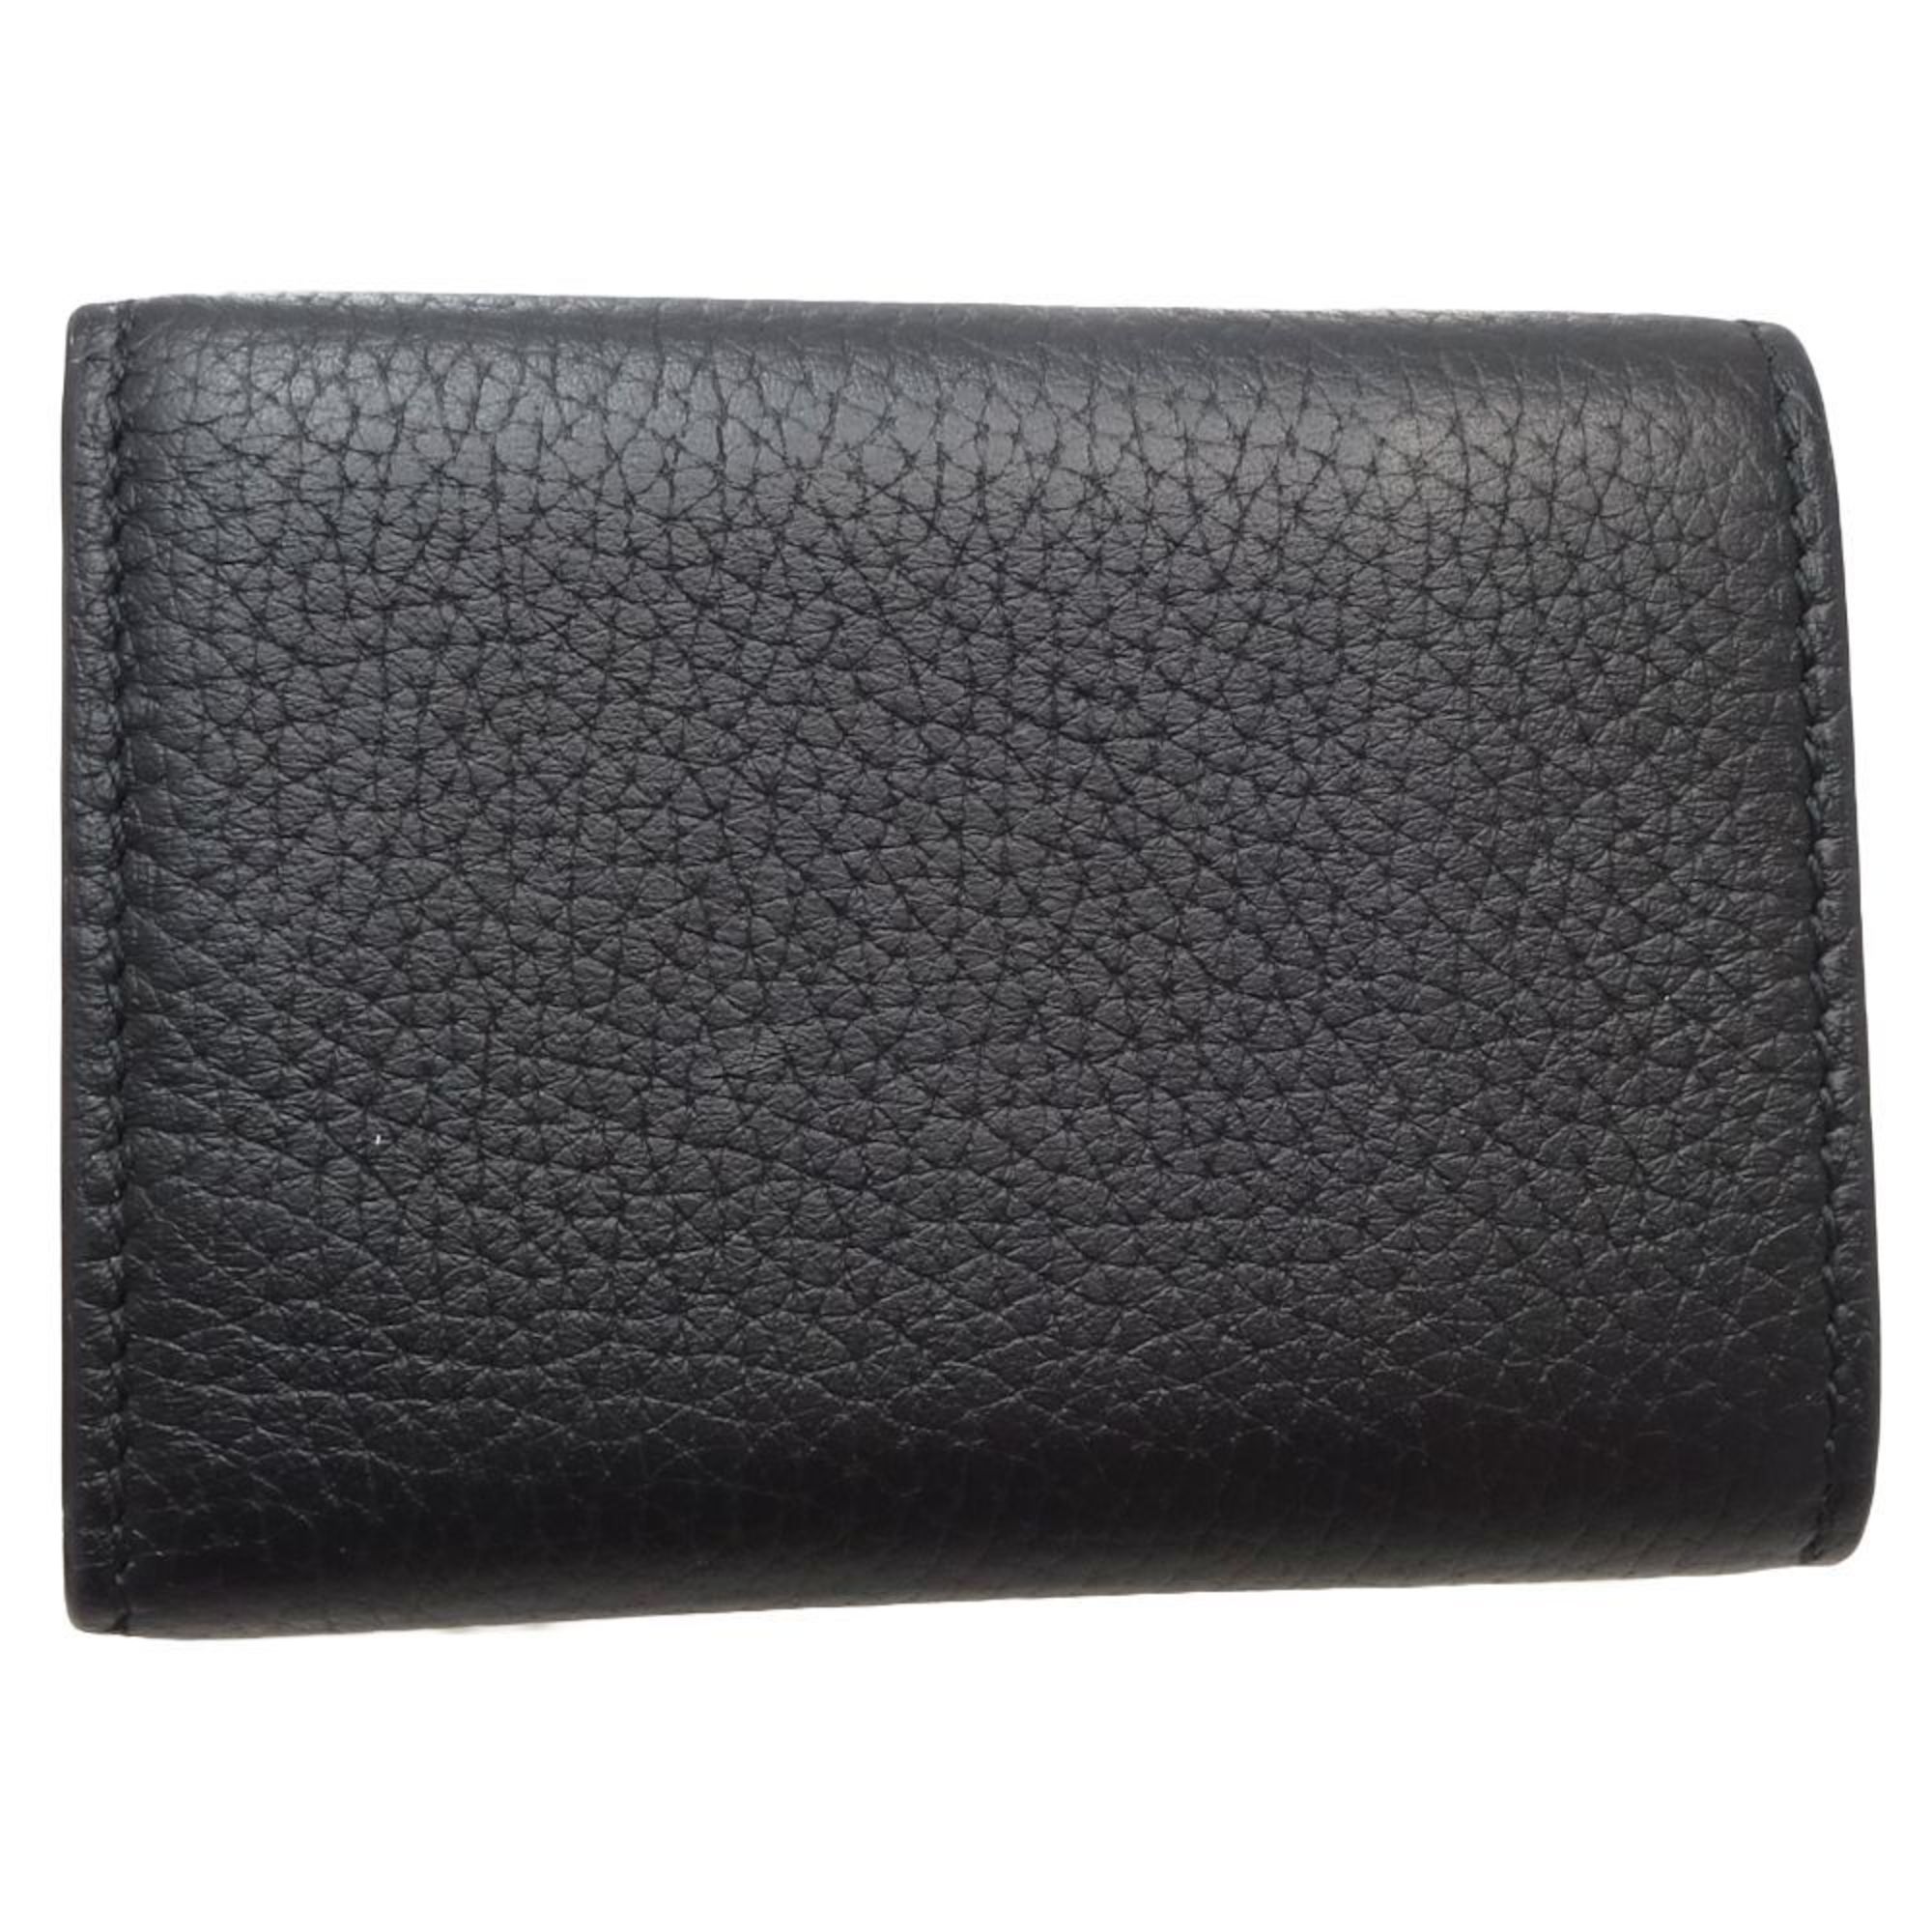 GUCCI Gucci Horsebit Compact Wallet 745988 Trifold Calf Black 180281